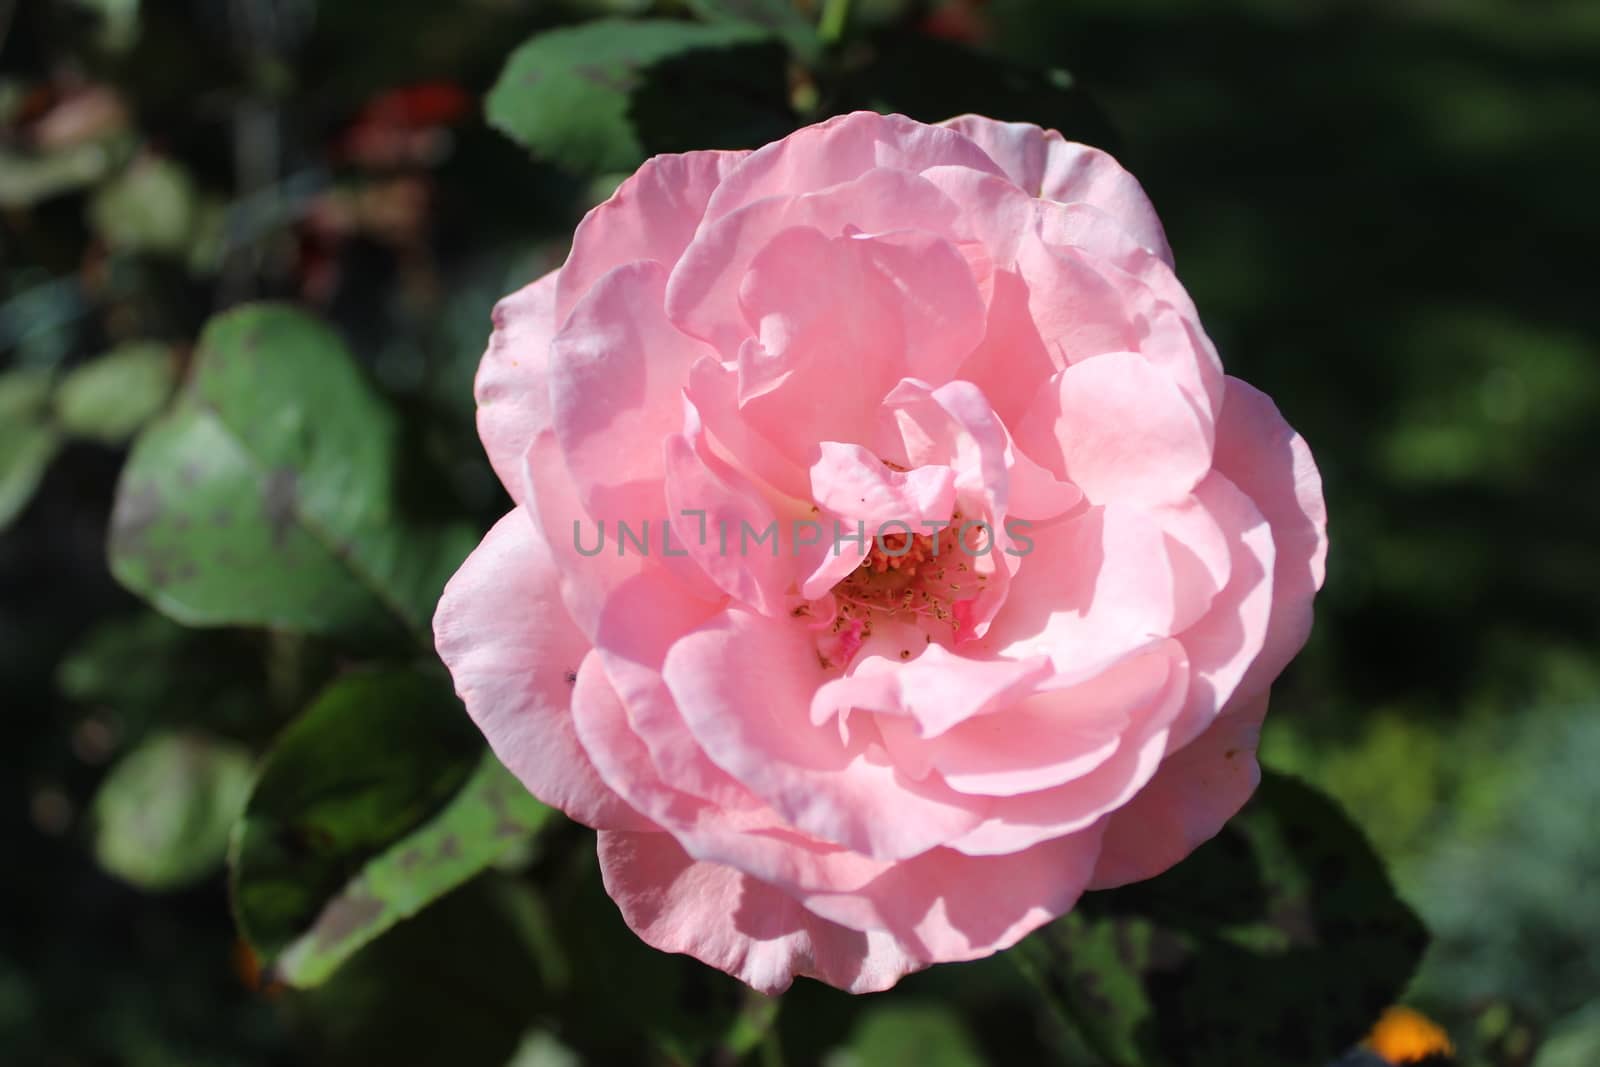 pink rose with buds in the garden by martina_unbehauen